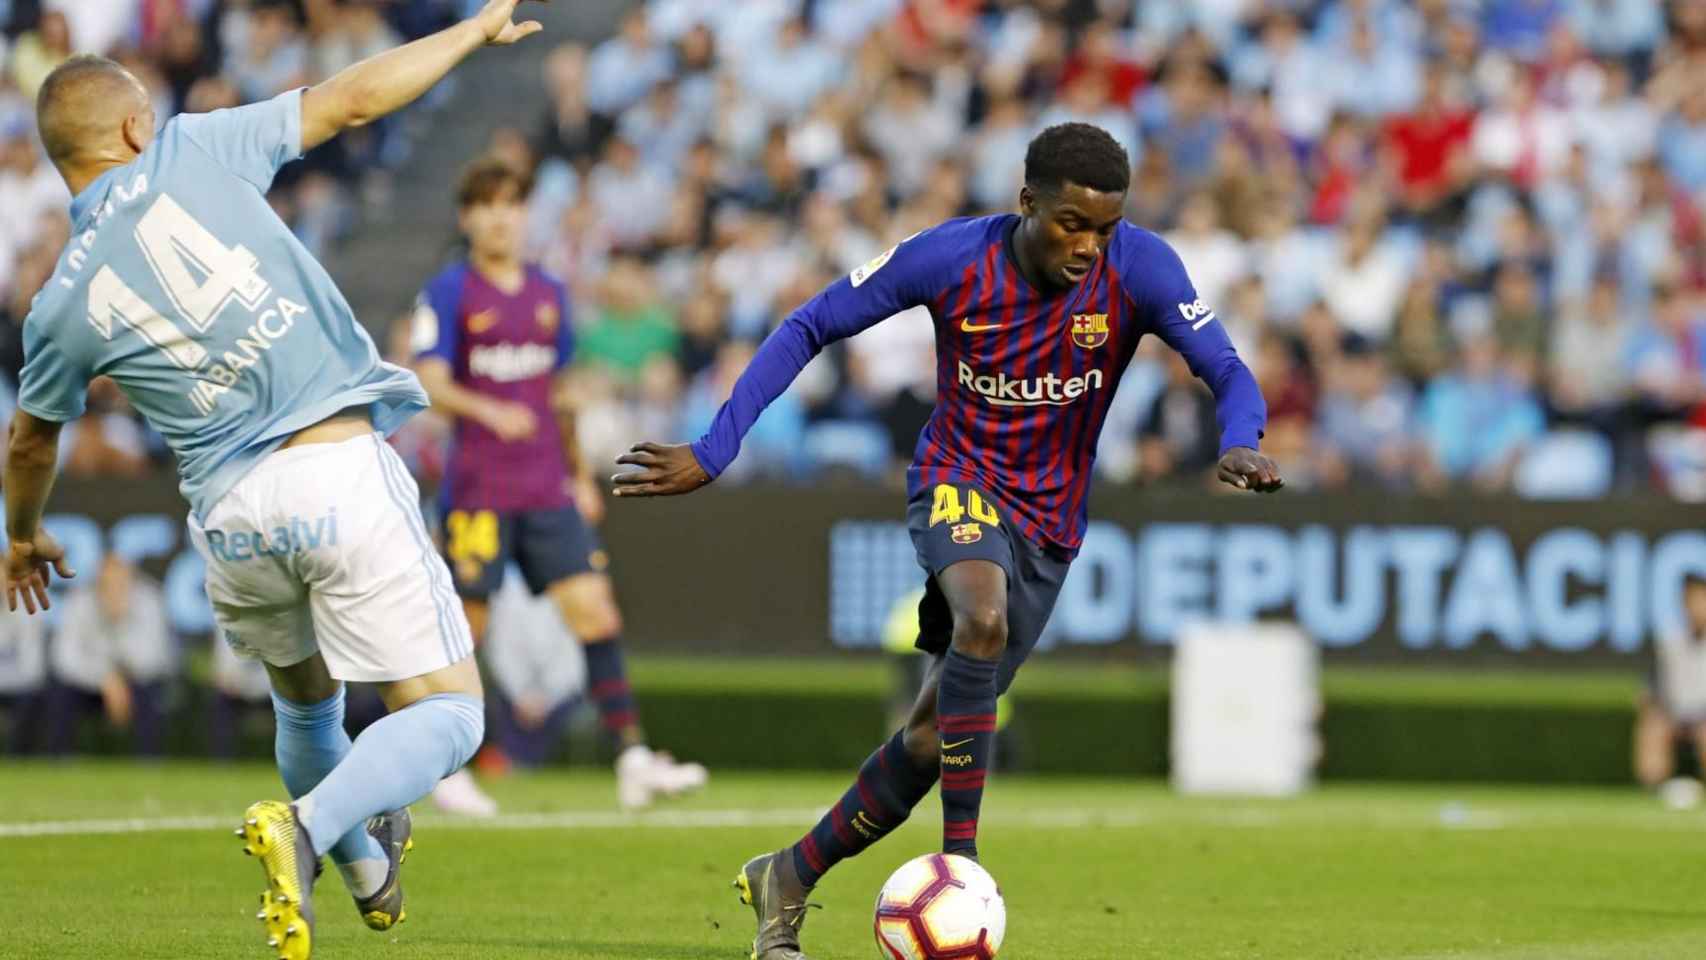 Wagué jugando contra el Celta en Balaídos / FC Barcelona